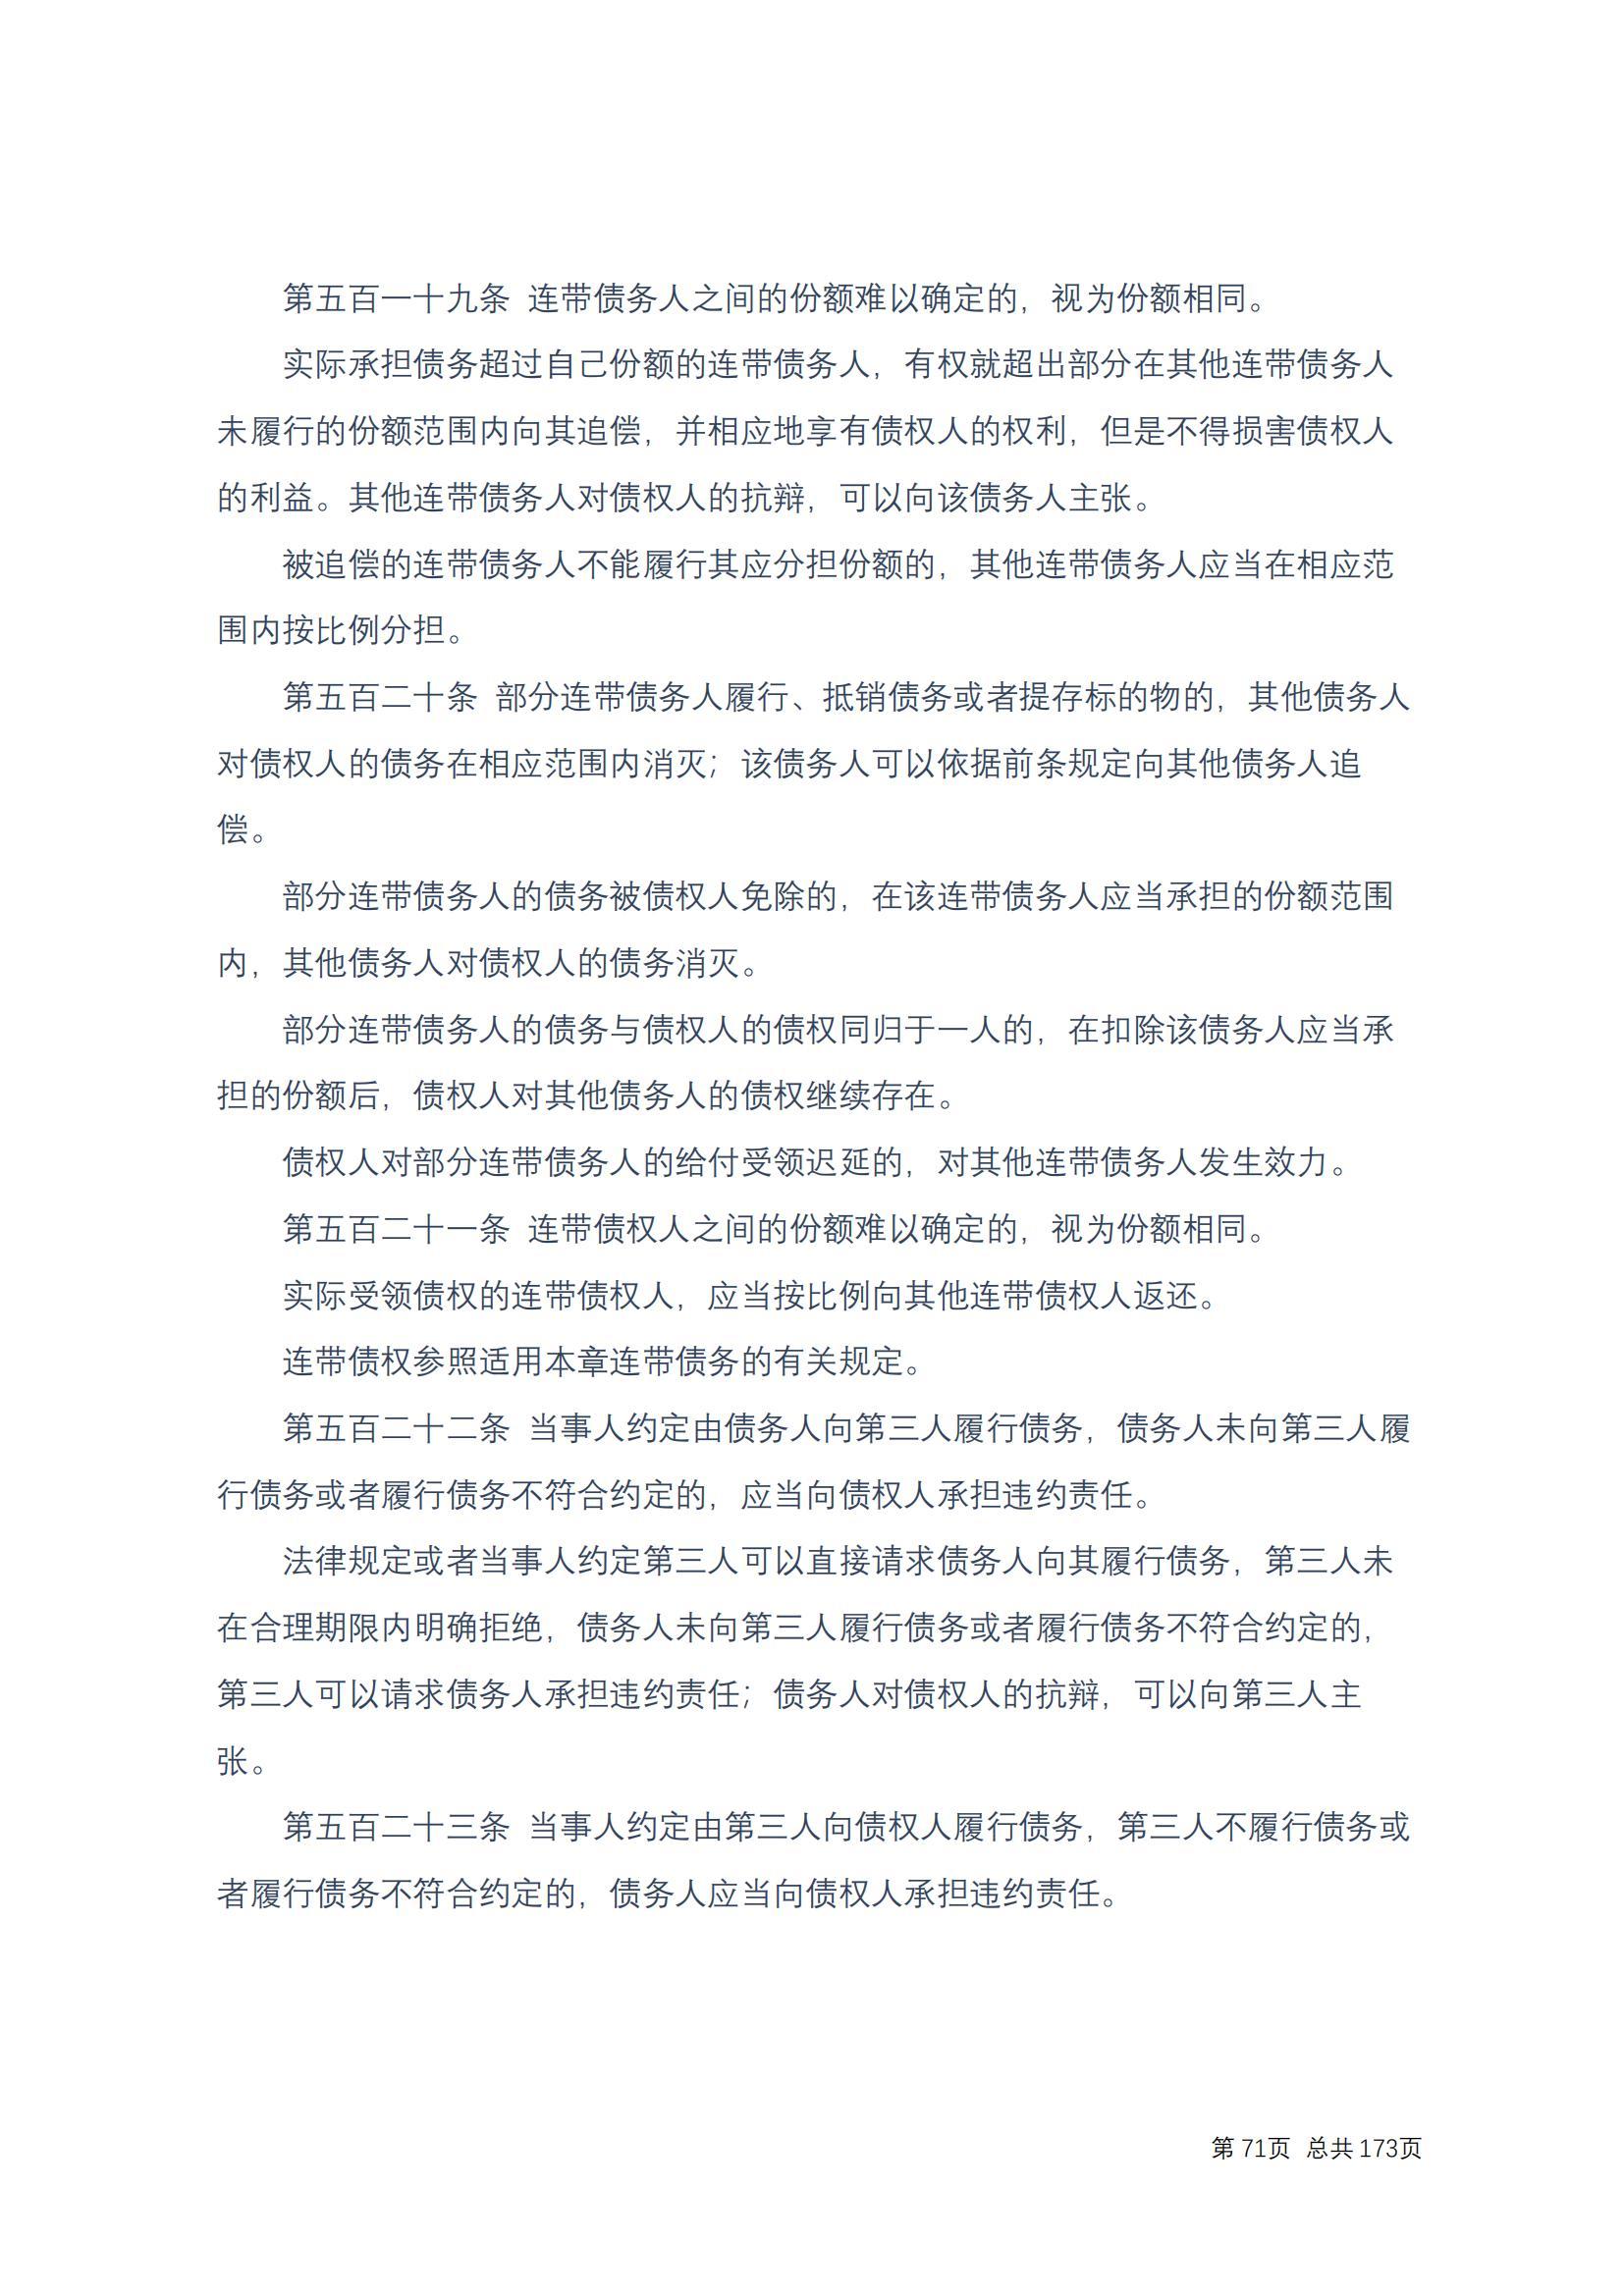 中华人民共和国民法典 修改过_70